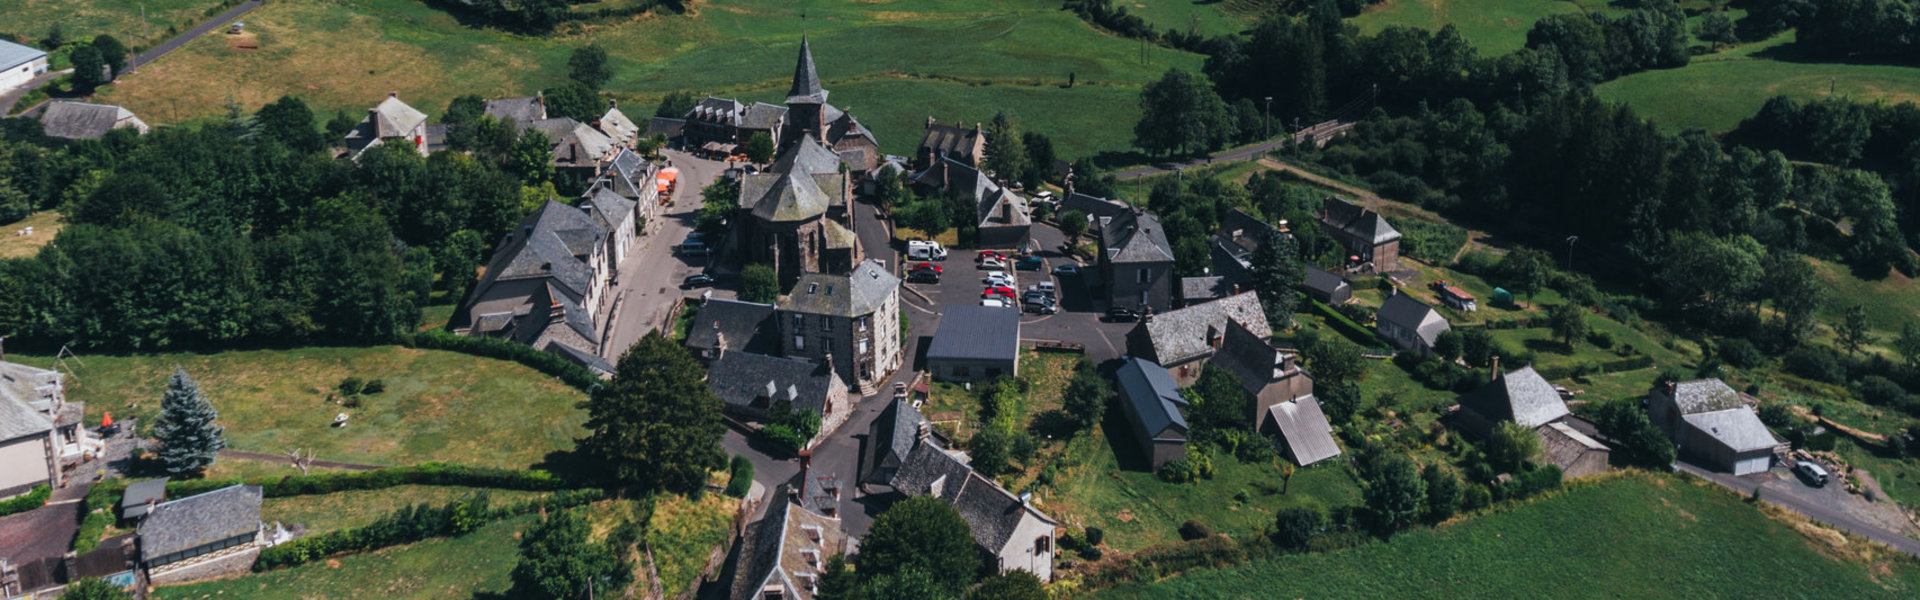 Patrimoine Communal Mairie Tranquillité Cantal Auvergne